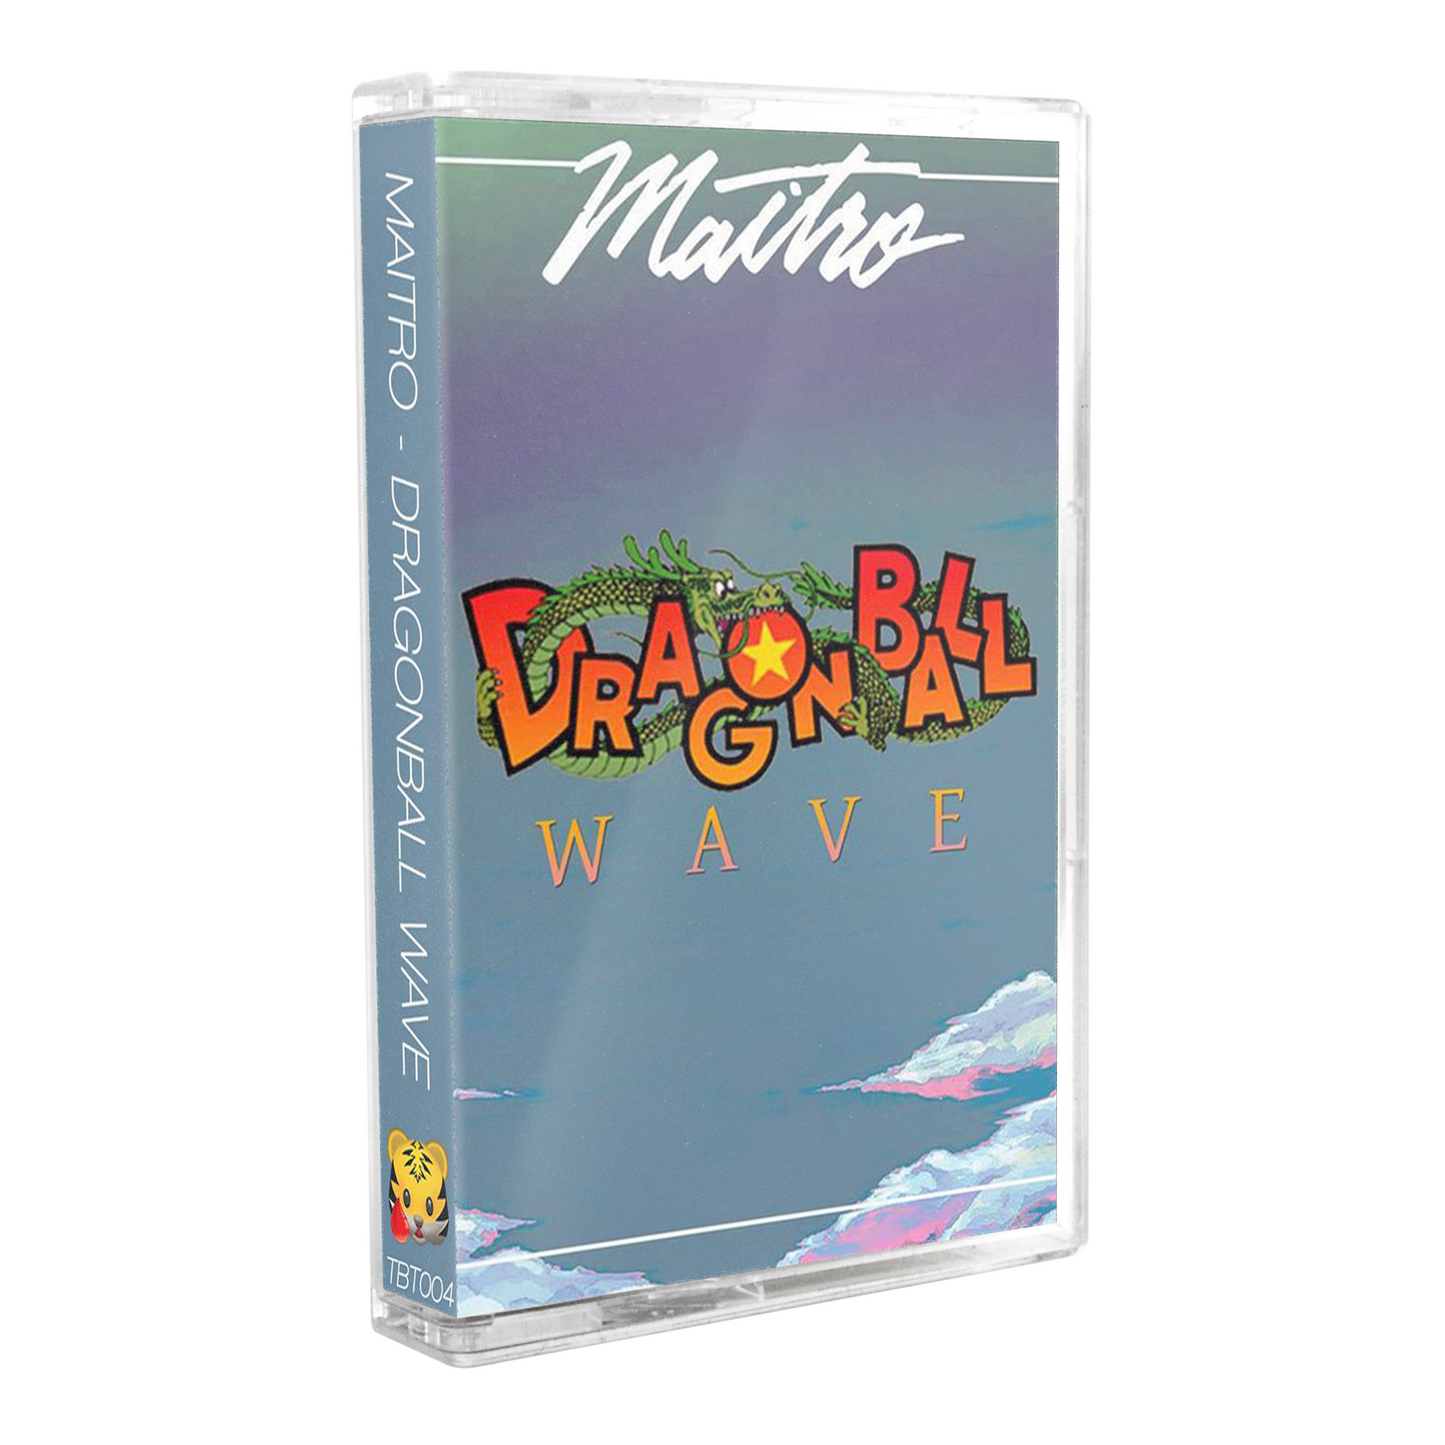 Maitro - "Dragonball Wave I" Cassette Tape